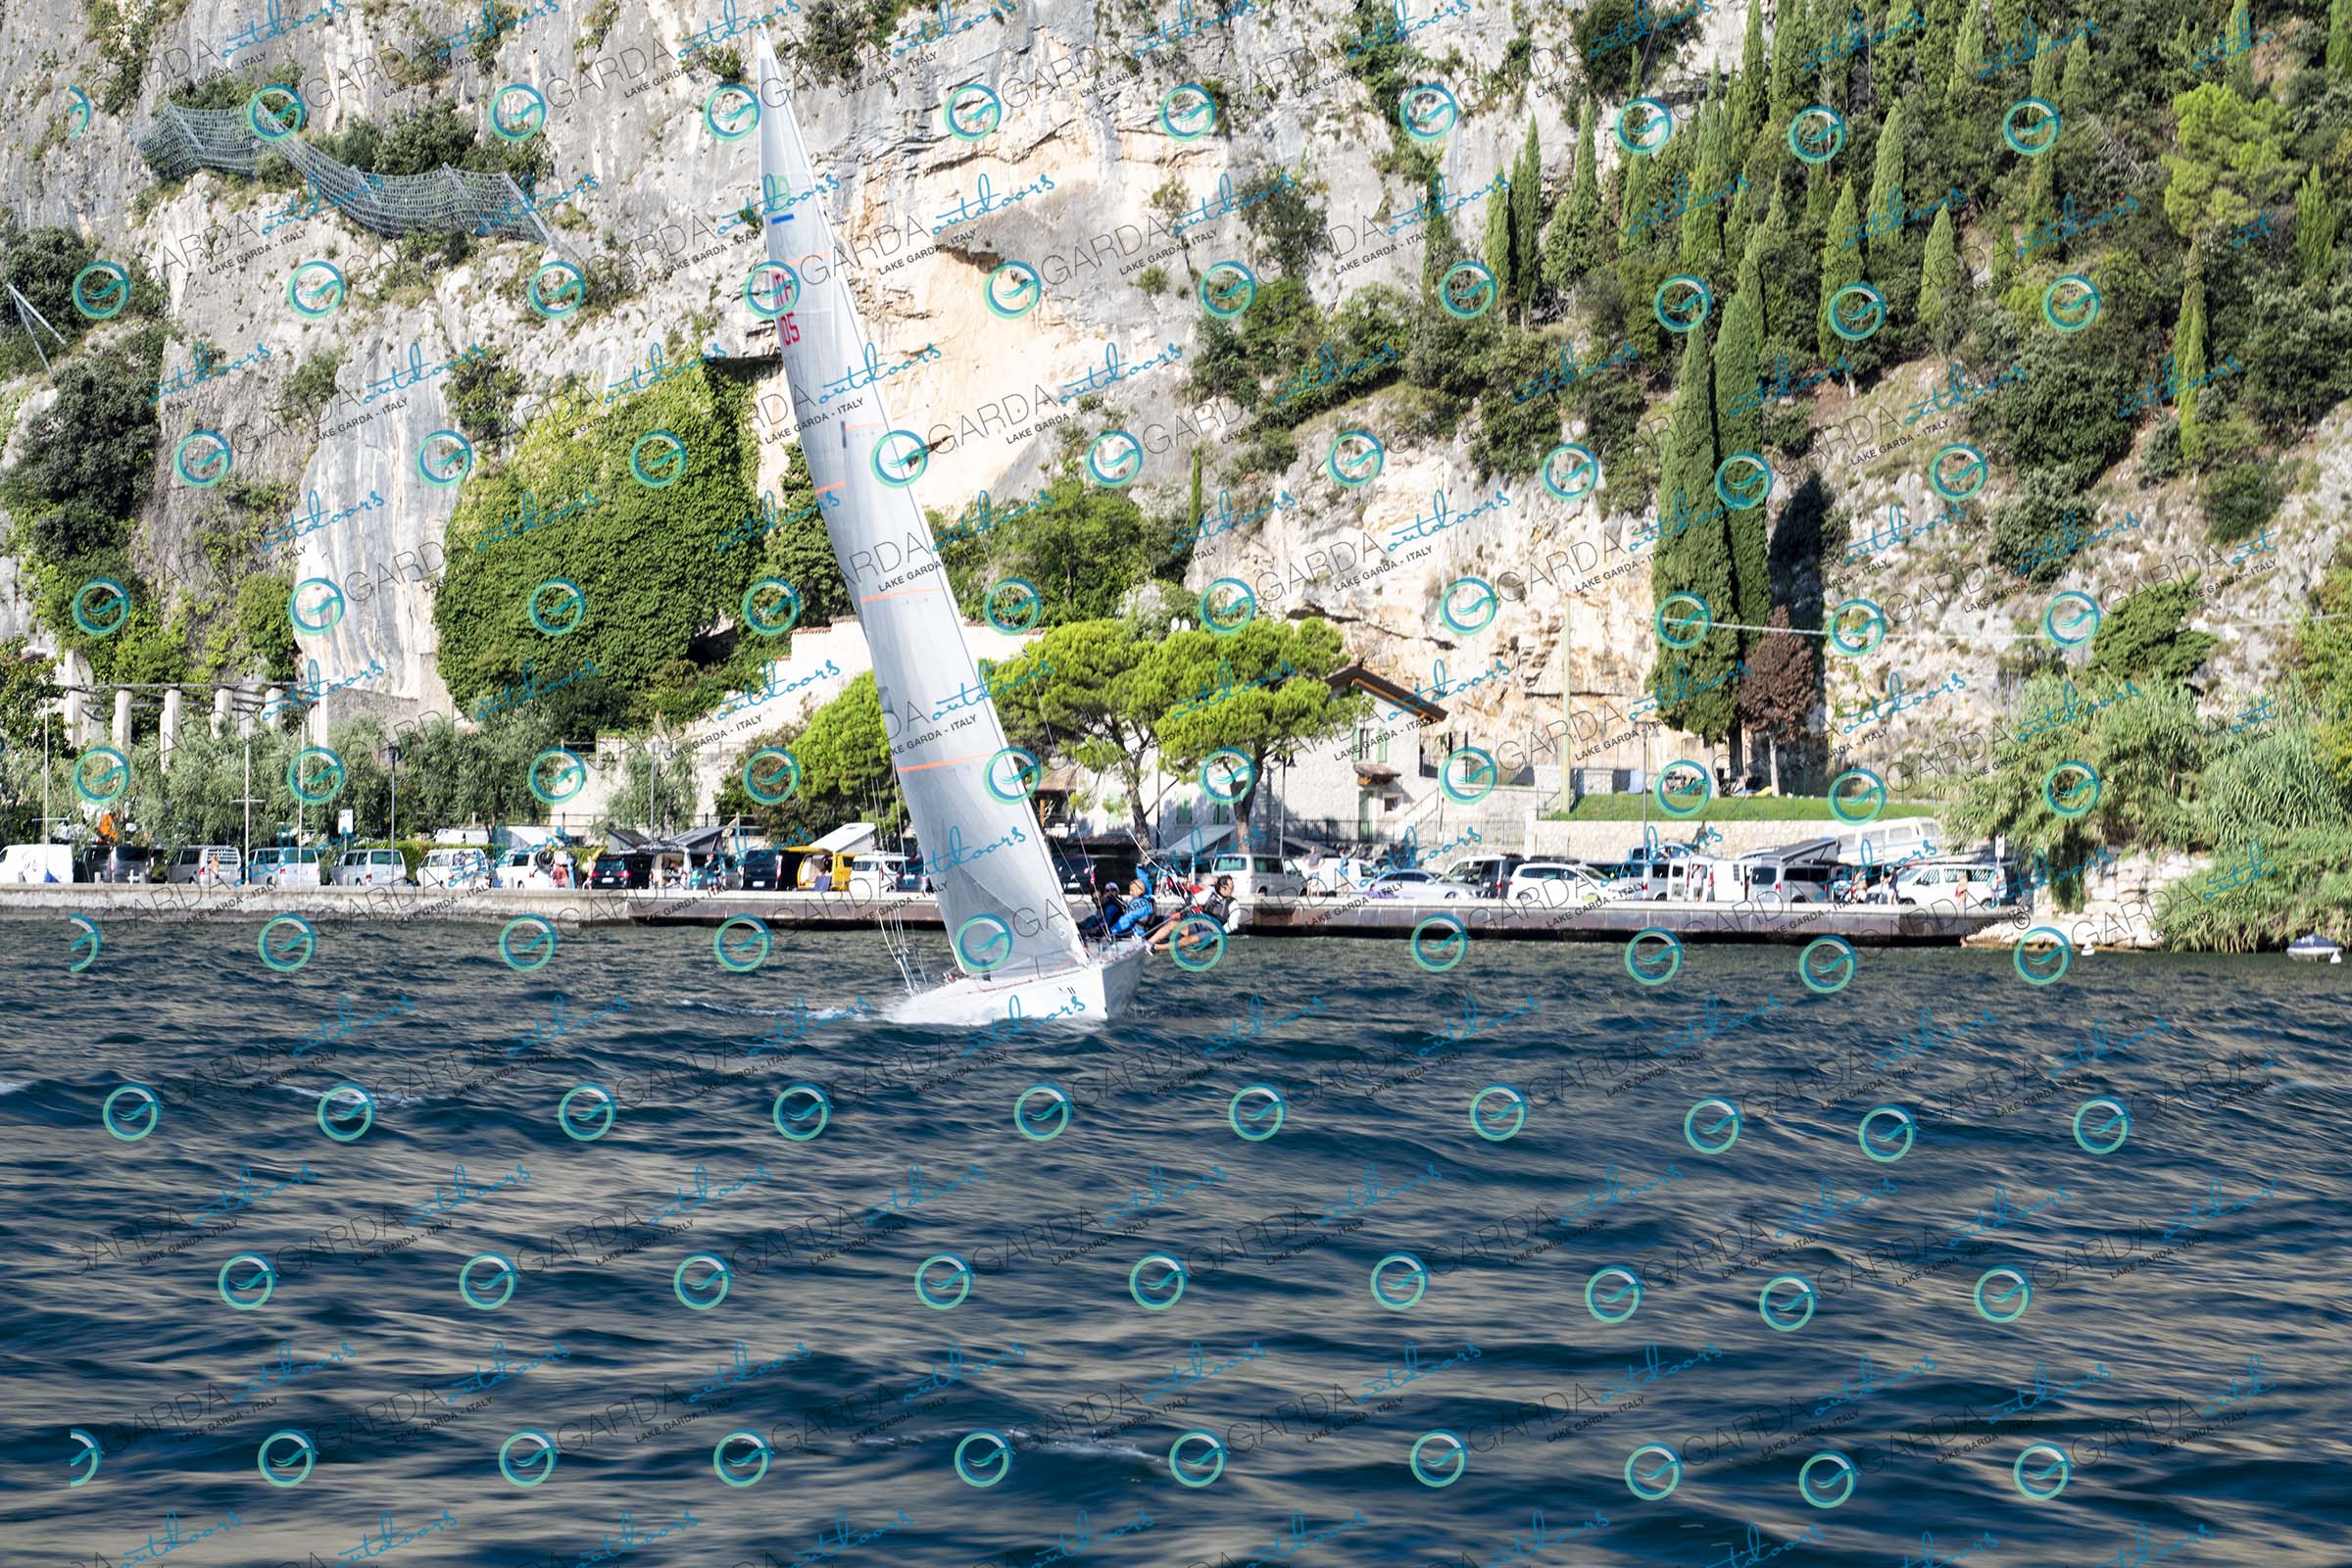 Barche a vela sul Lago di Garda